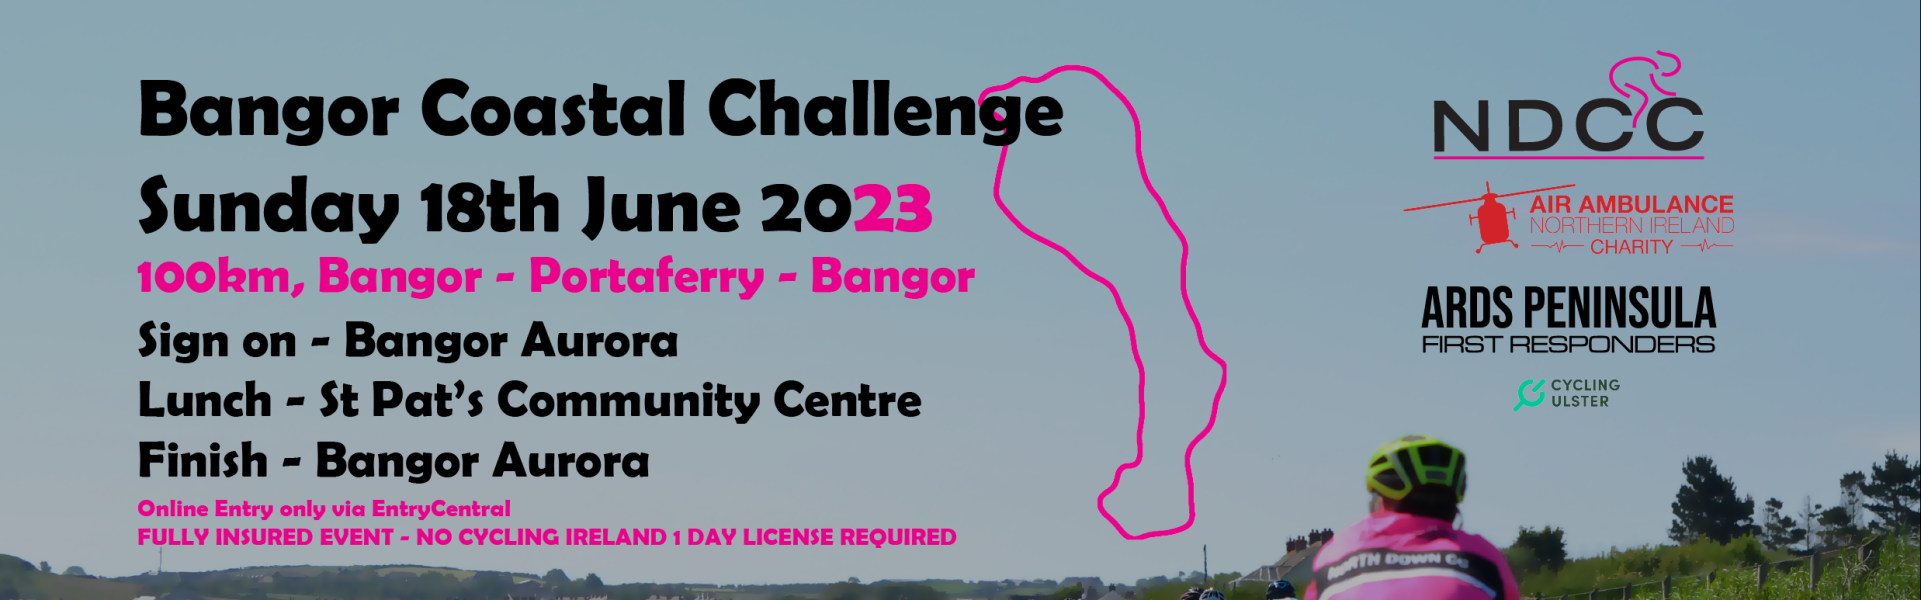 NDCC Coastal Challenge 2023 carousel image 1